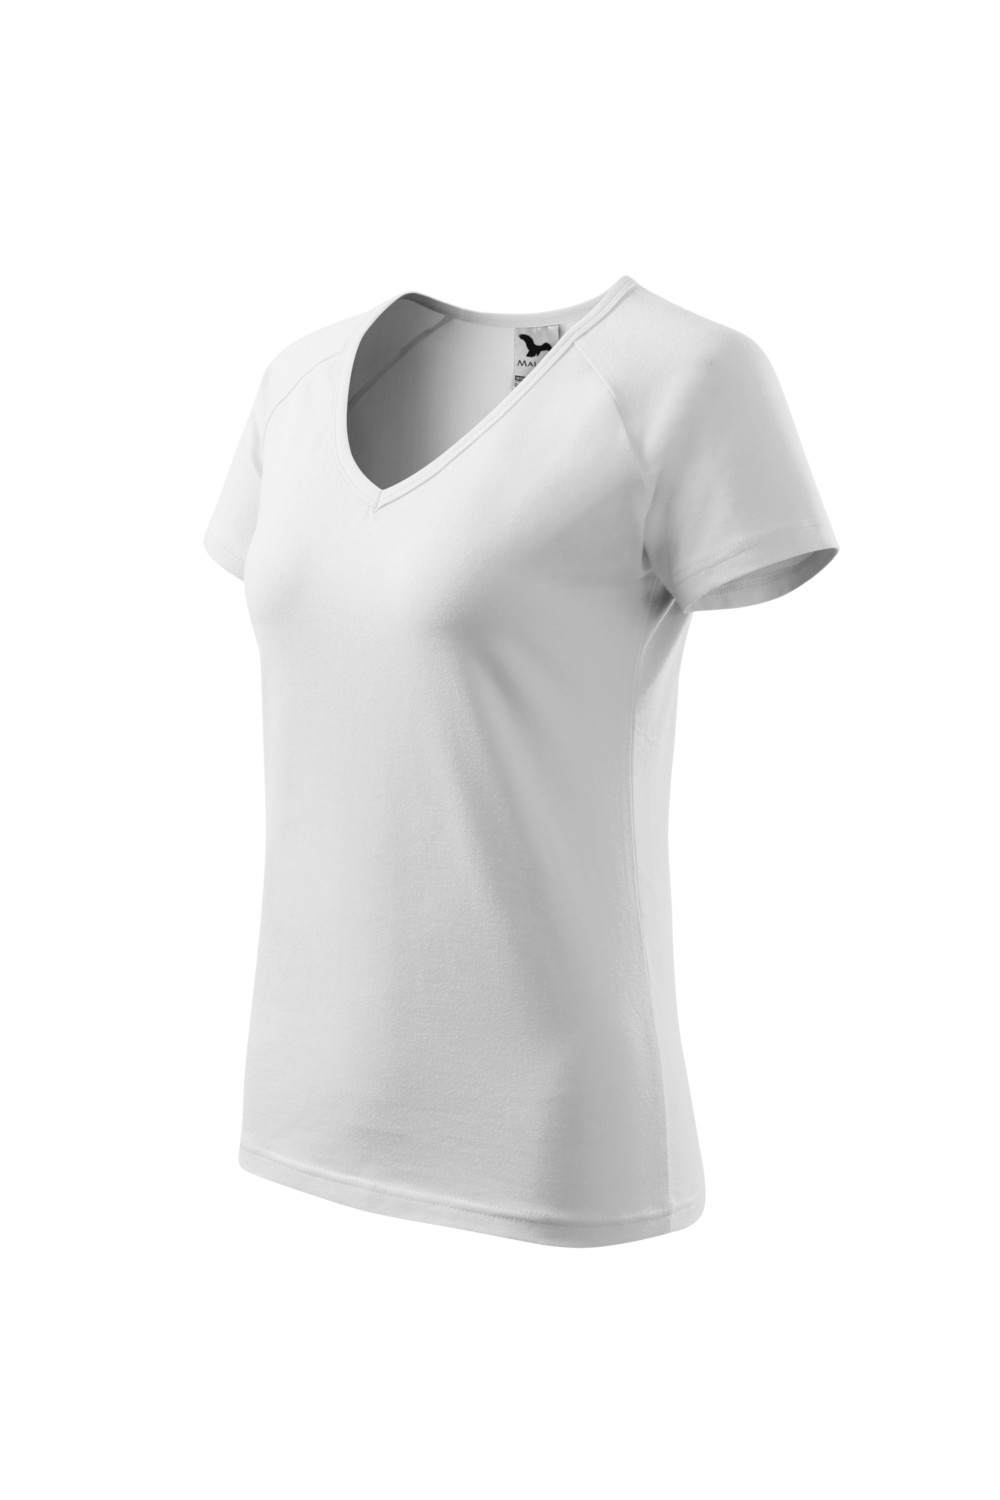 Koszulka damska 95% bawełna 5% elastan DREAM 128 odzież biały